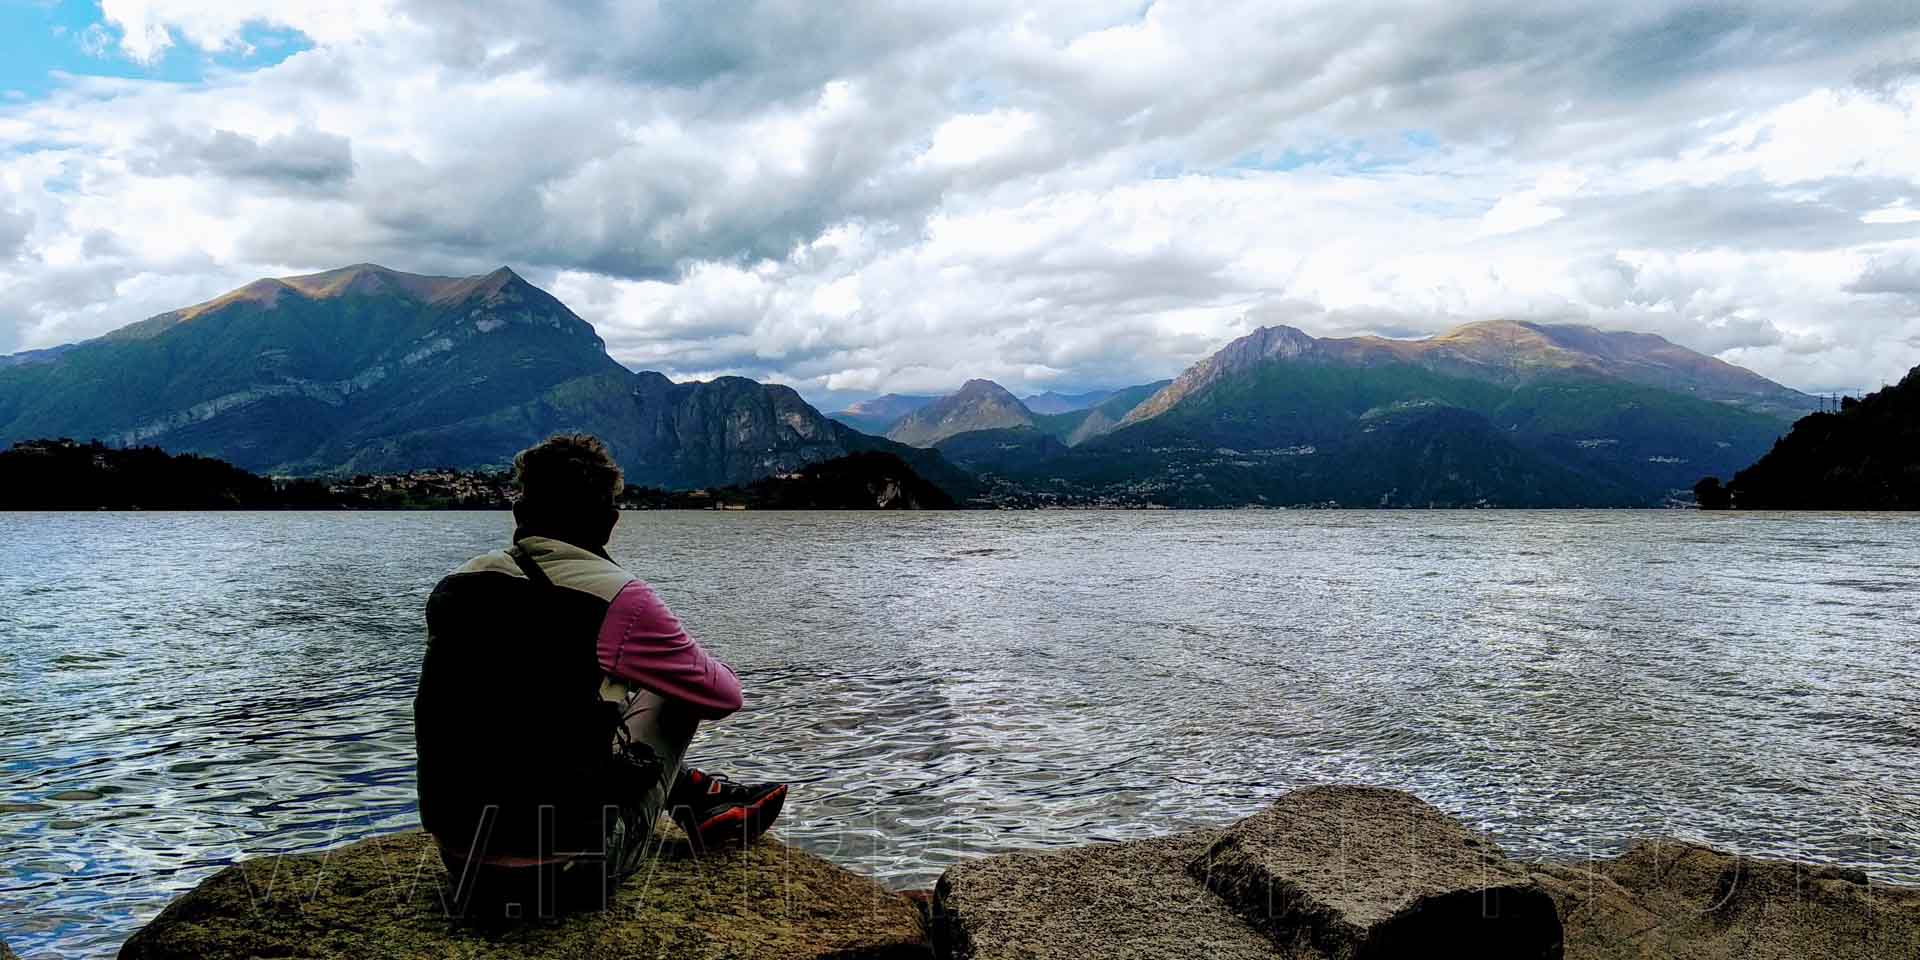 Will seduto sui massi guarda l'orizzonte sulle sponde del lago di Como